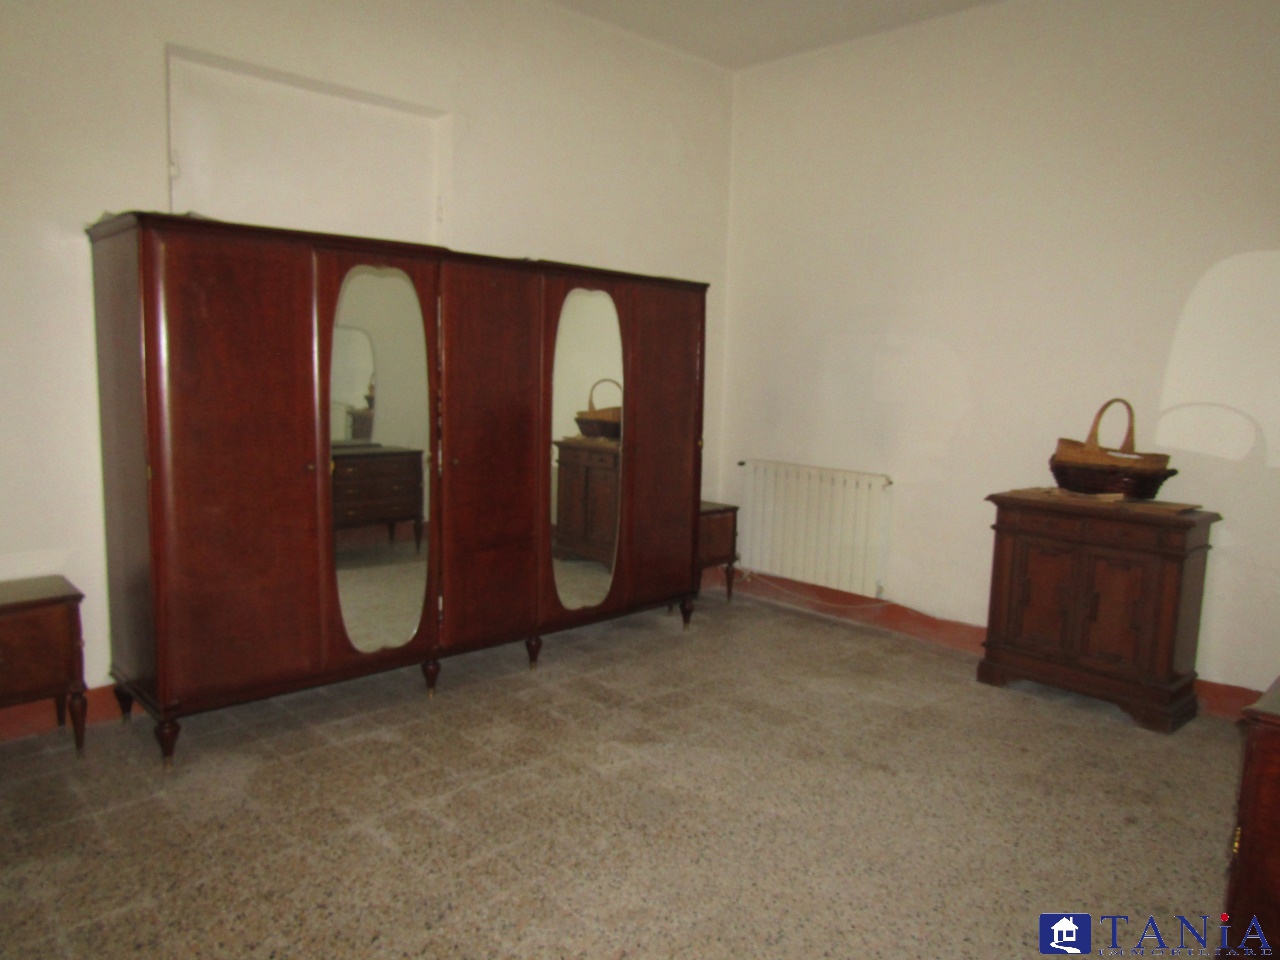 Verkoop Vier kamers, Carrara